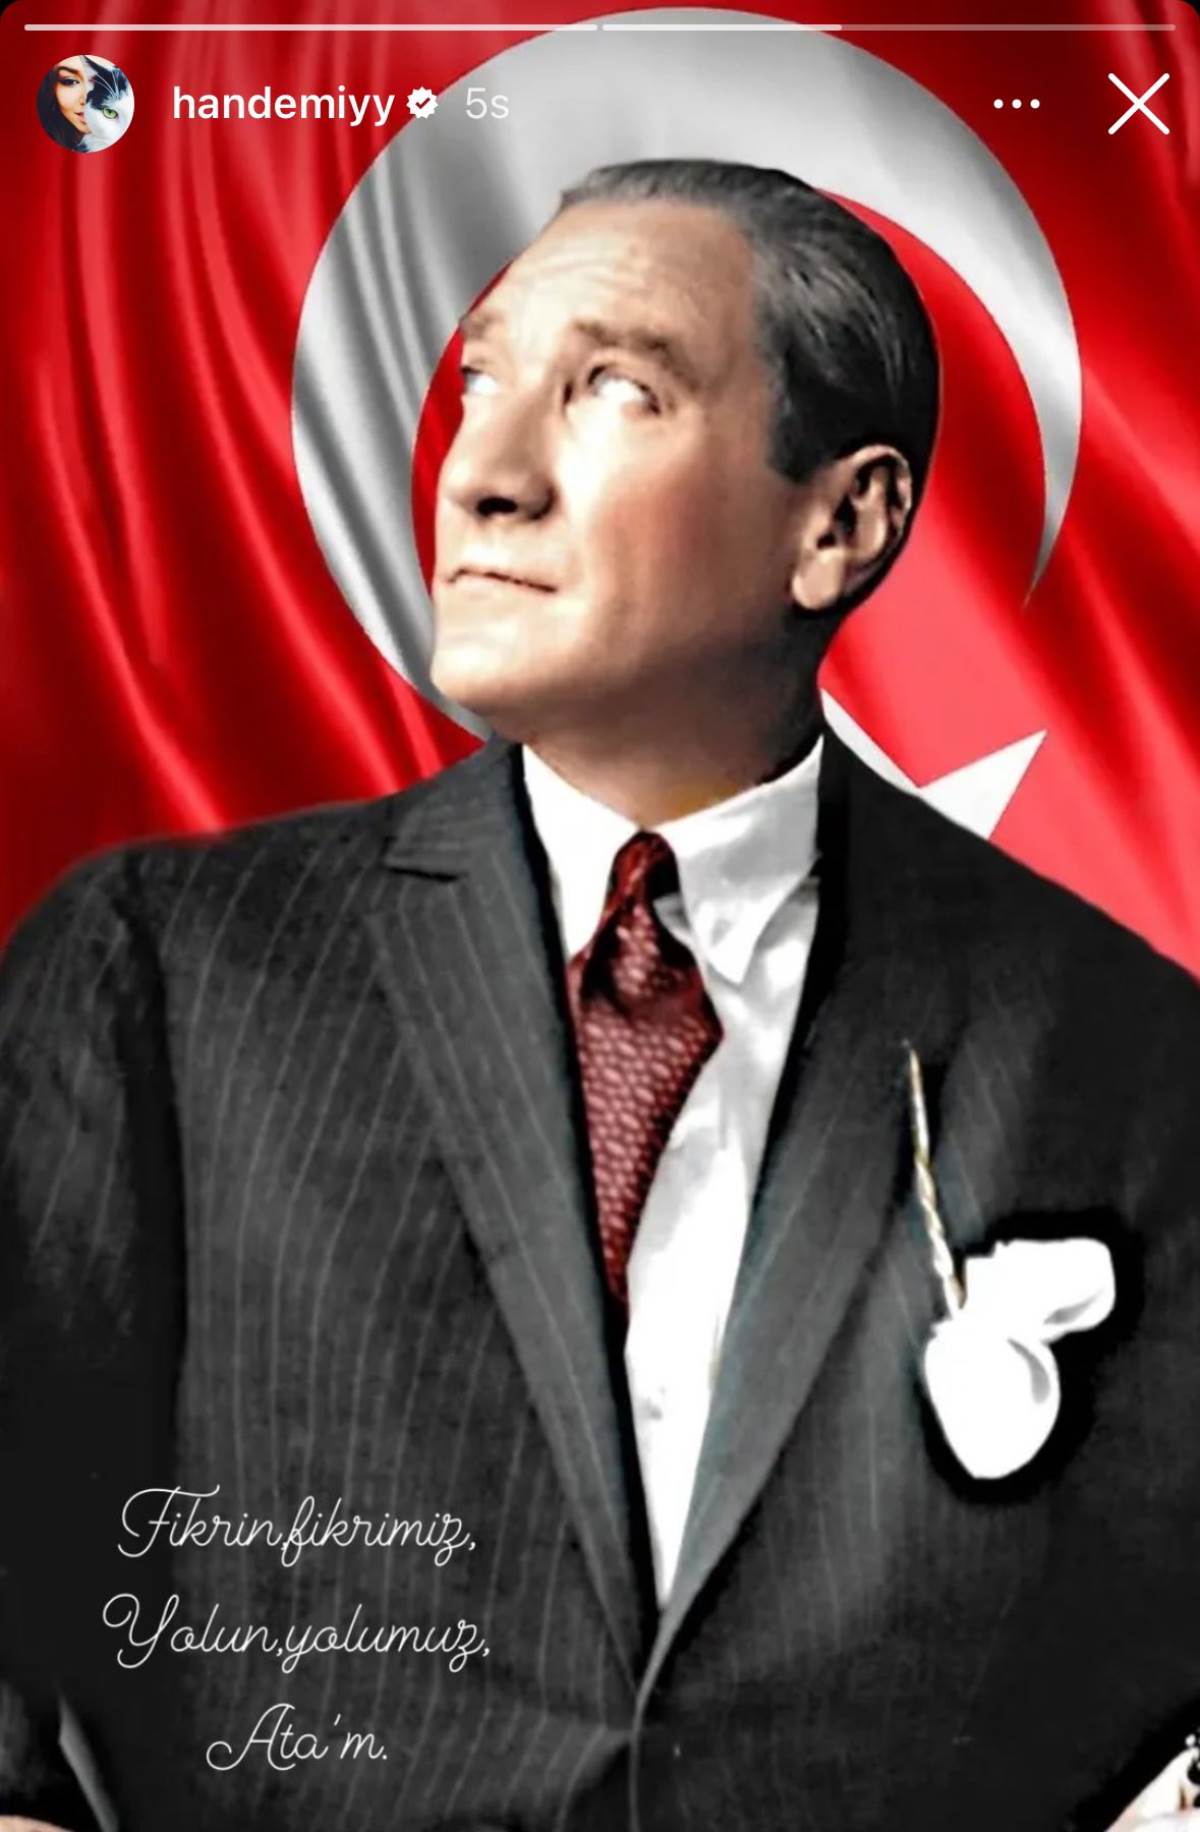 Hande Erçel Atatürk